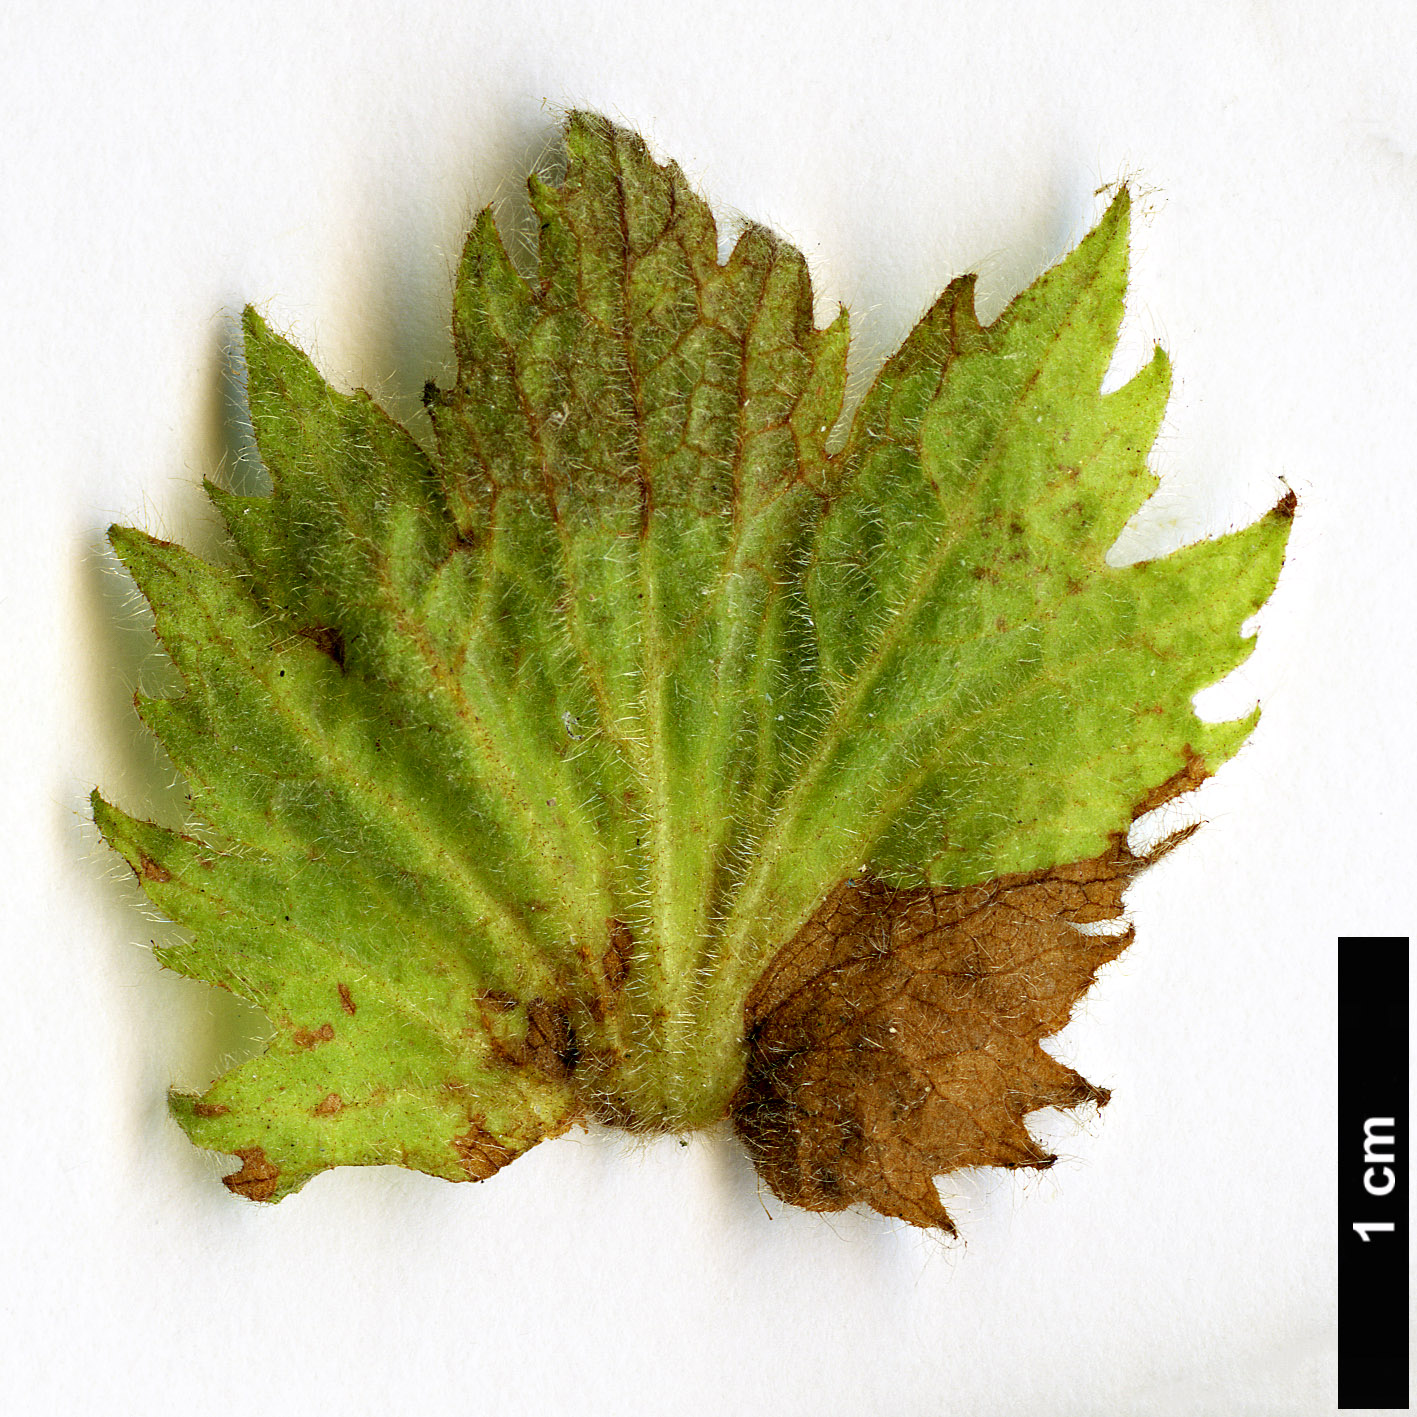 High resolution image: Family: Rosaceae - Genus: Rubus - Taxon: crassifolius